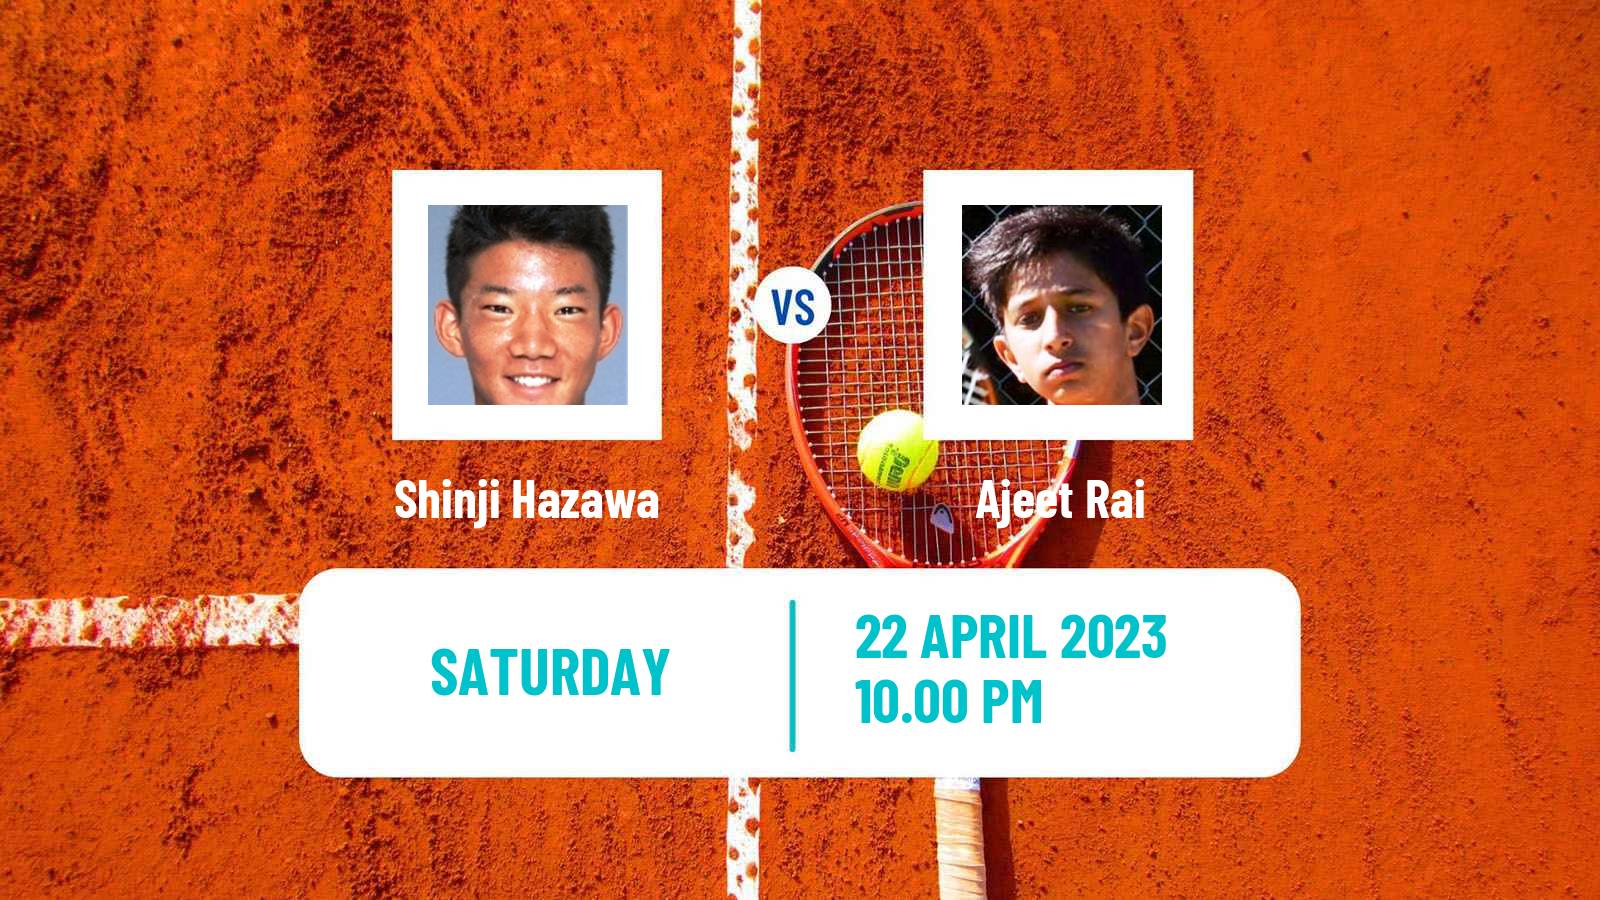 Tennis ATP Challenger Shinji Hazawa - Ajeet Rai